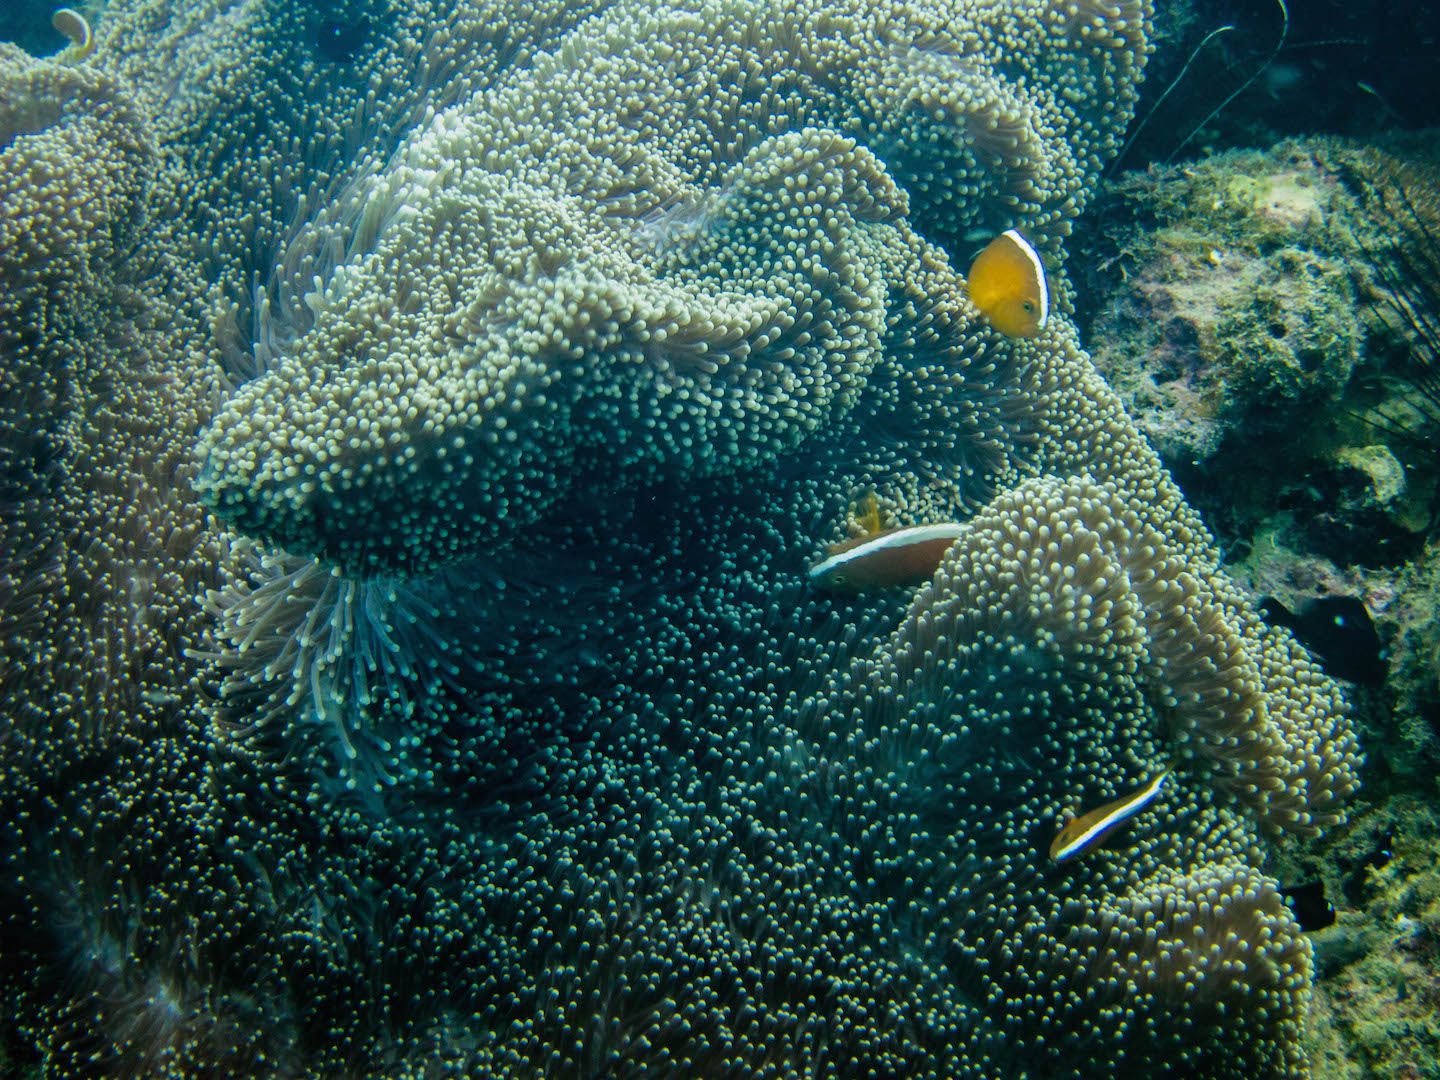 More clownfish, Natnat Dive Site, El Nido, Philippines